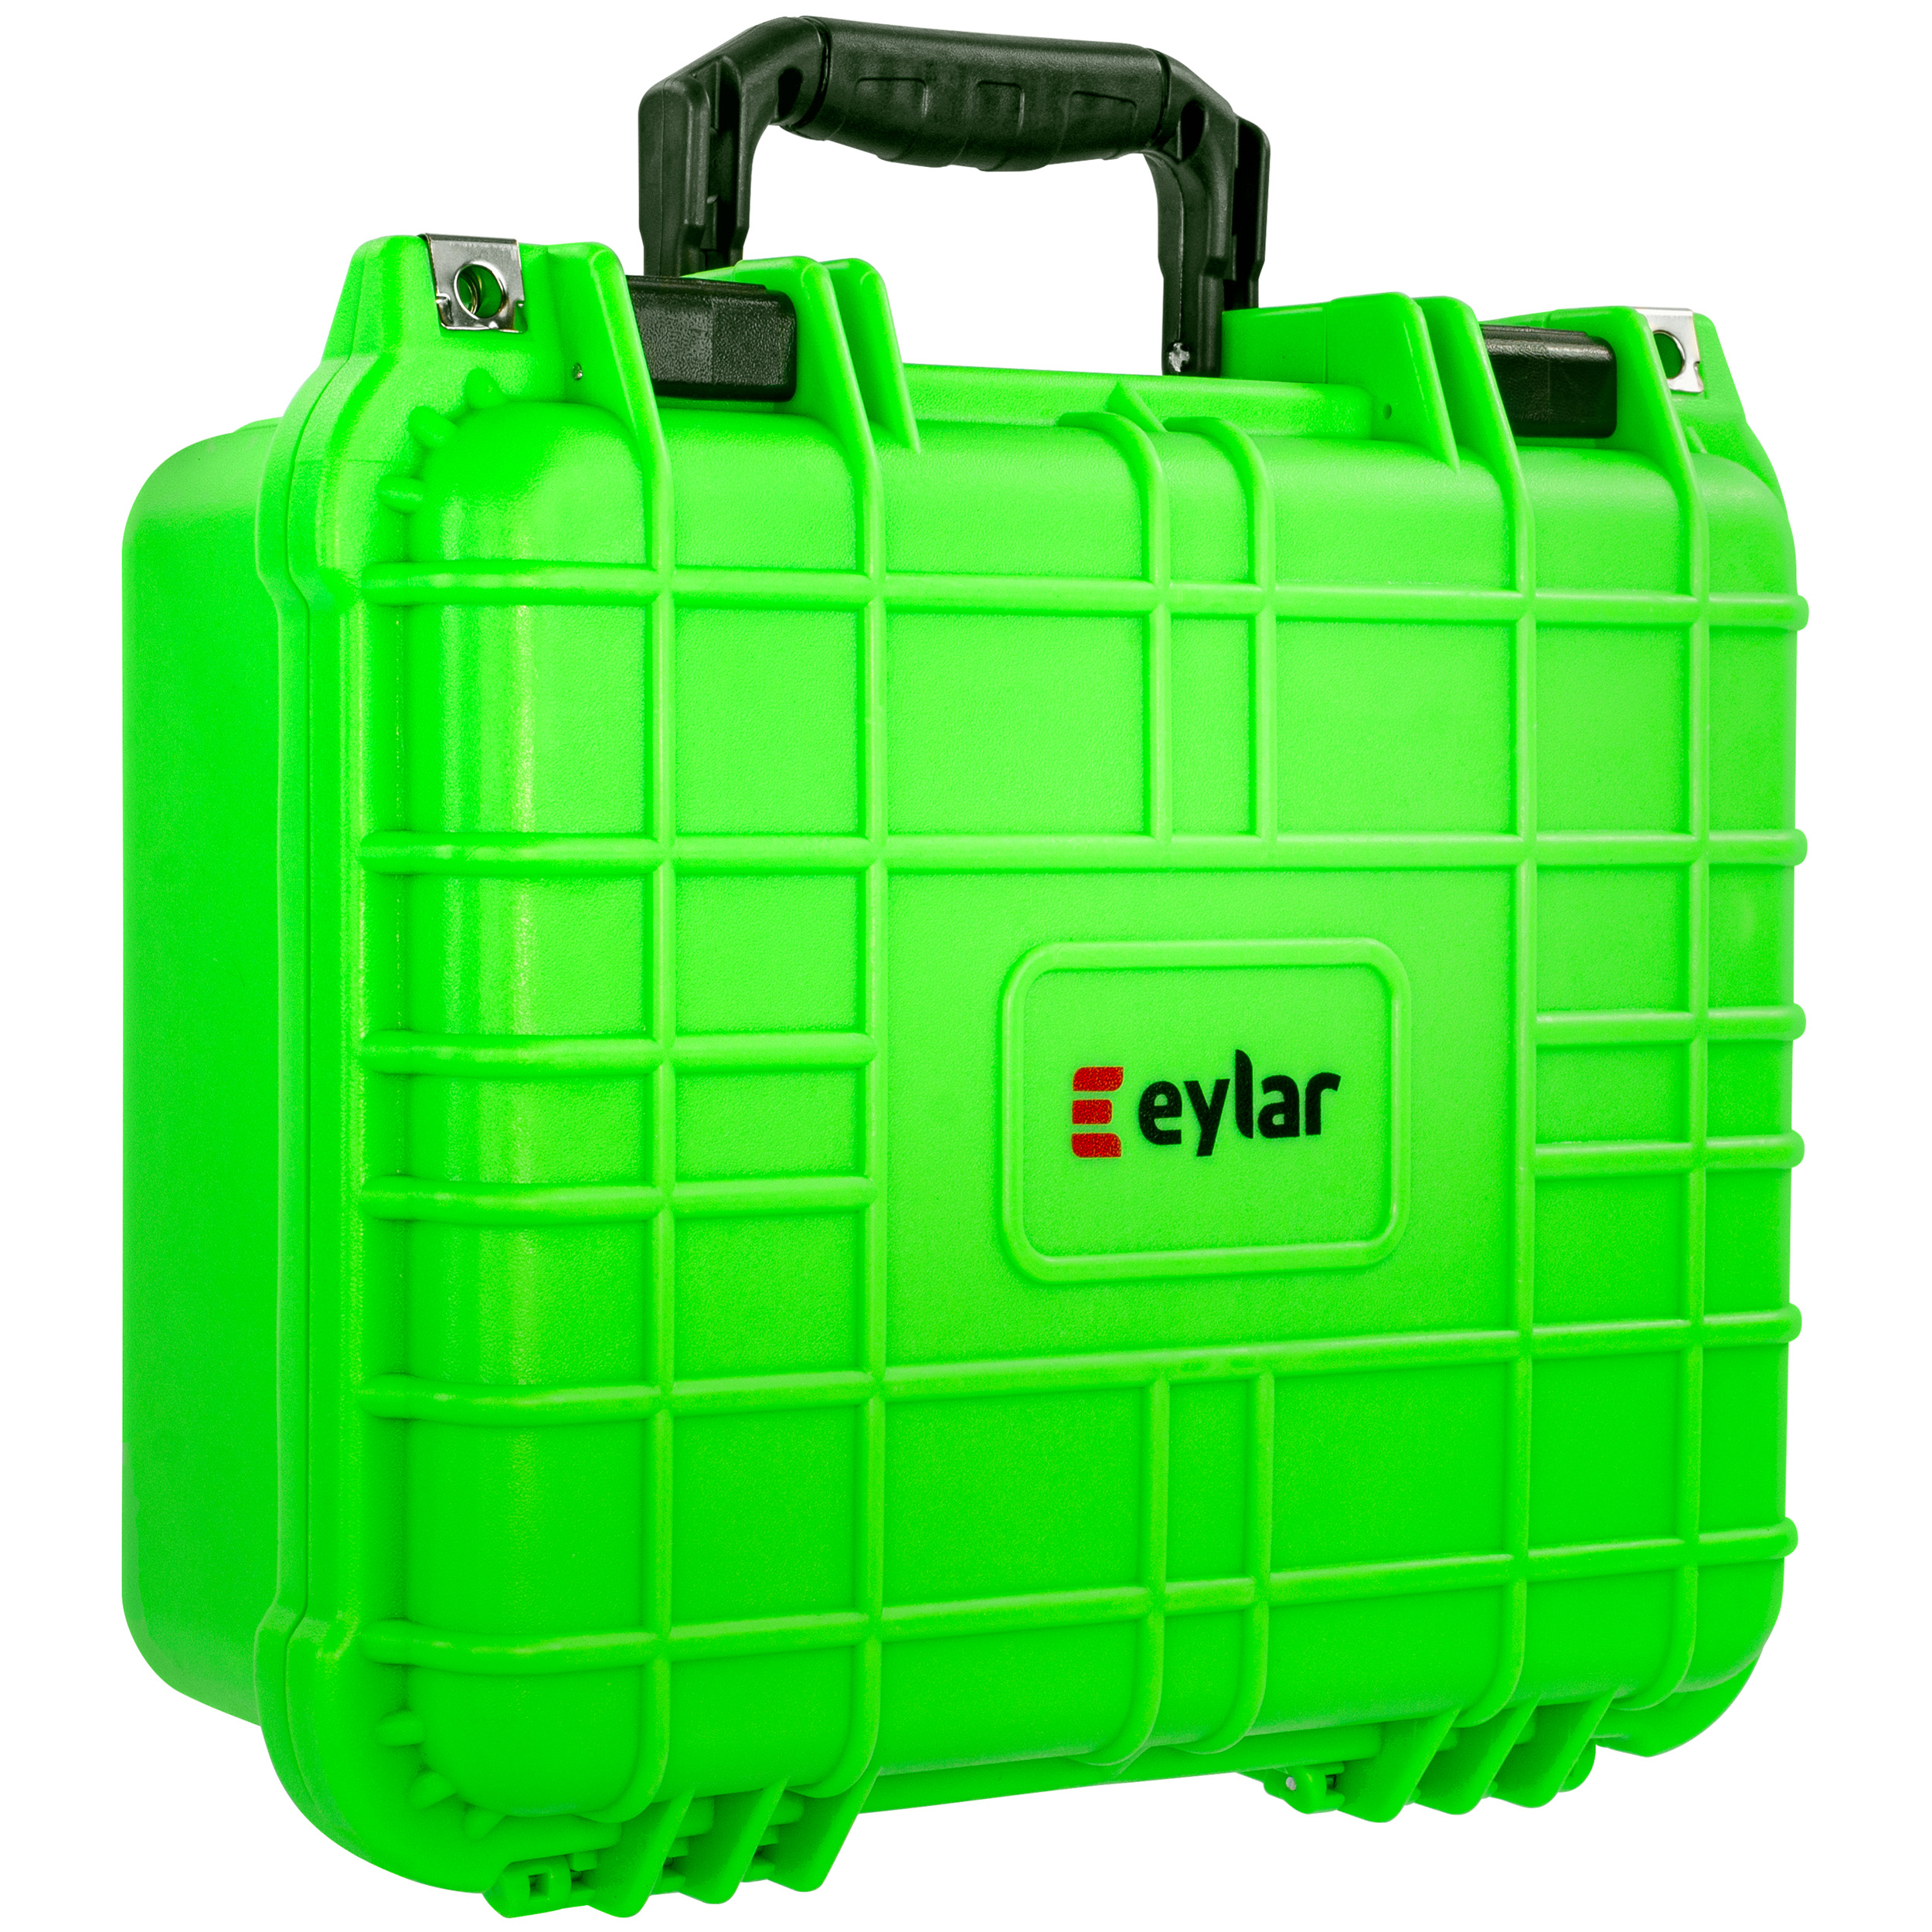 Waterproof Camera Case with Foam - Neon Green